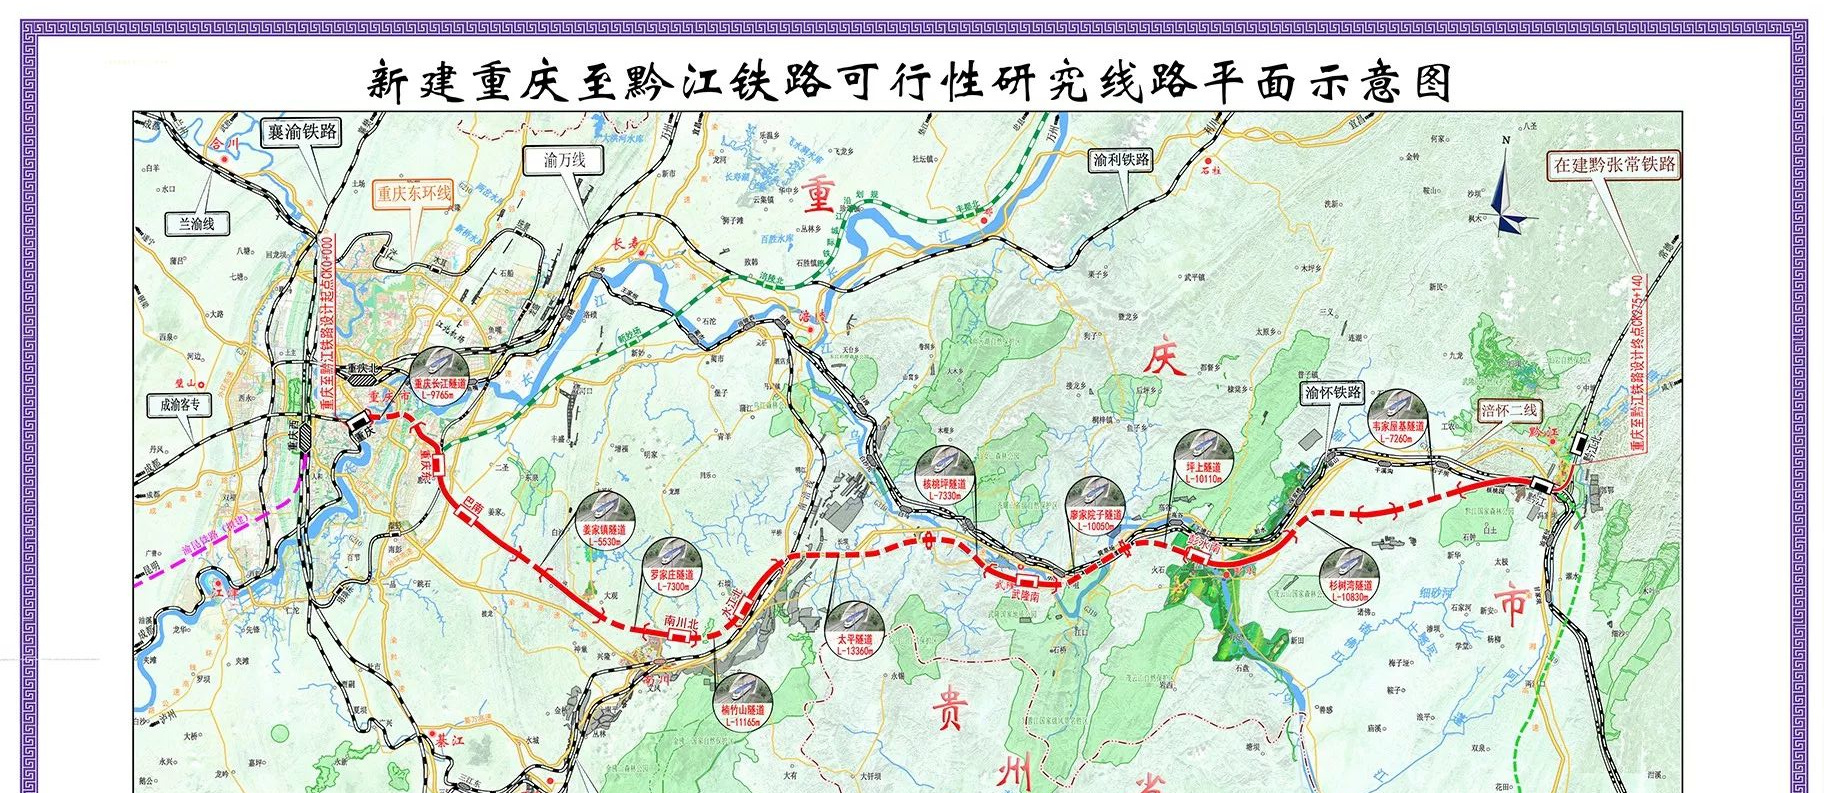 厦渝客运通道的重要组成部分——渝湘高速铁路